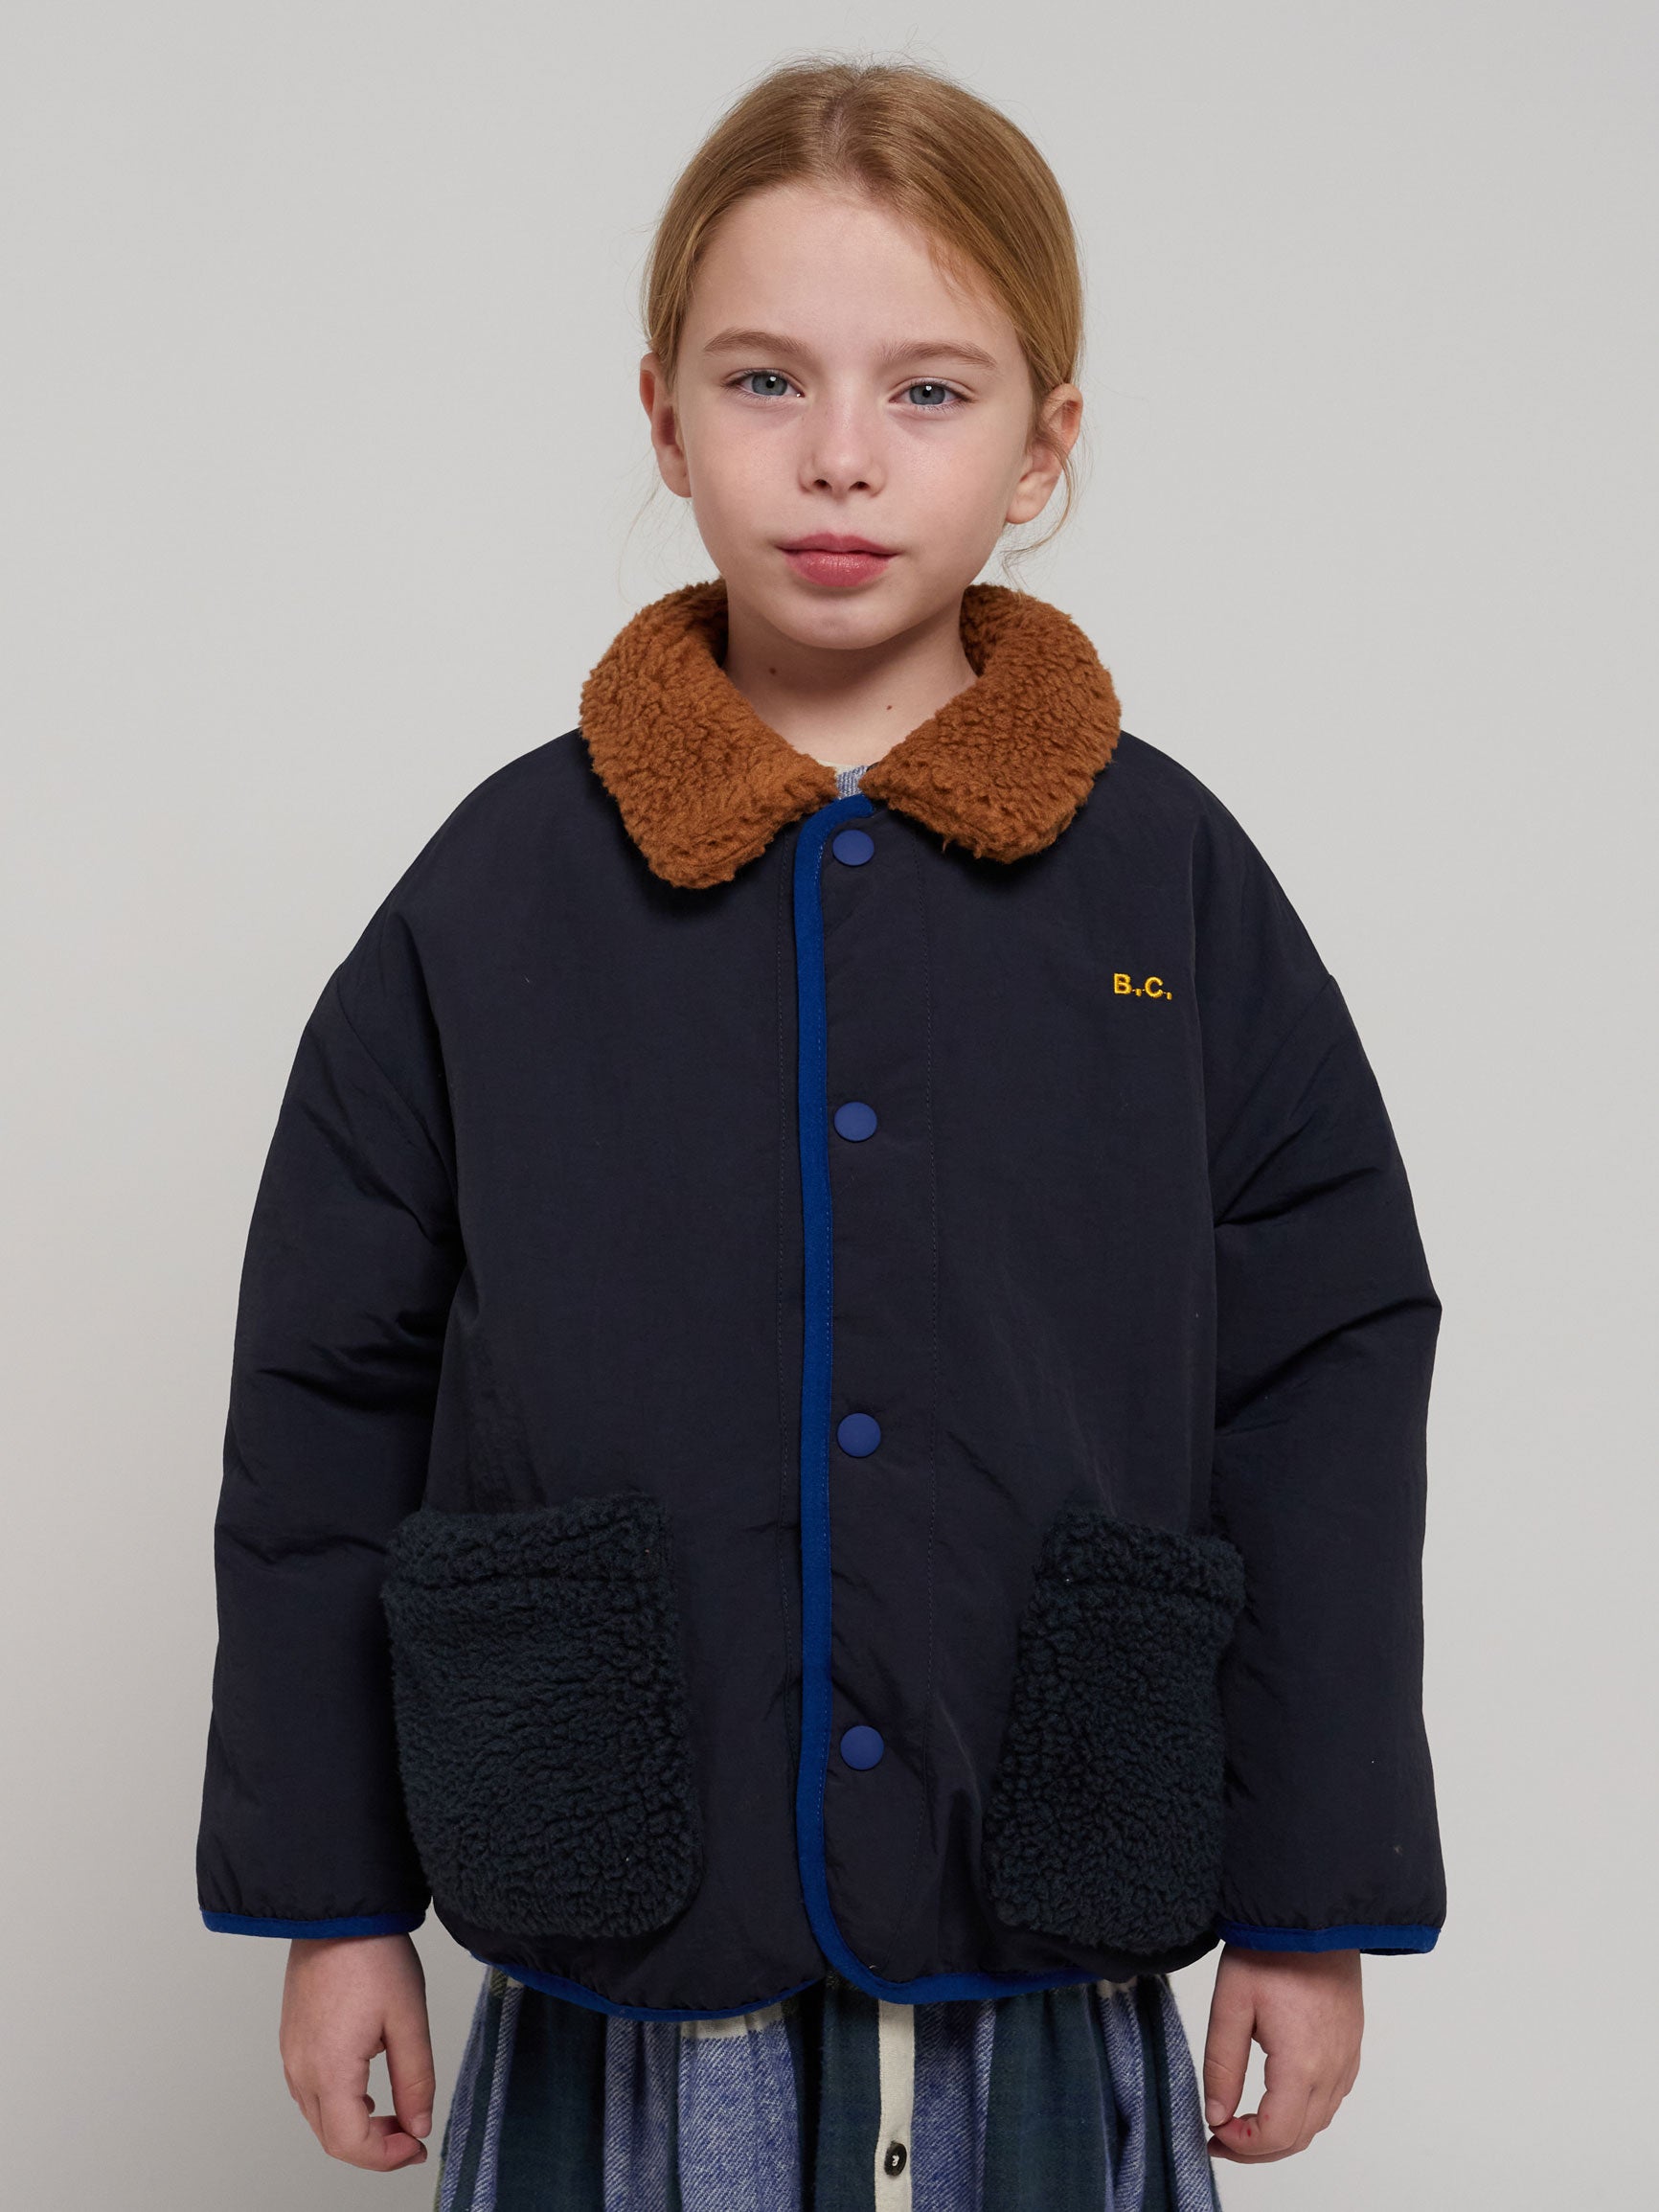 AW23 Outerwear Kid – Bobo Choses